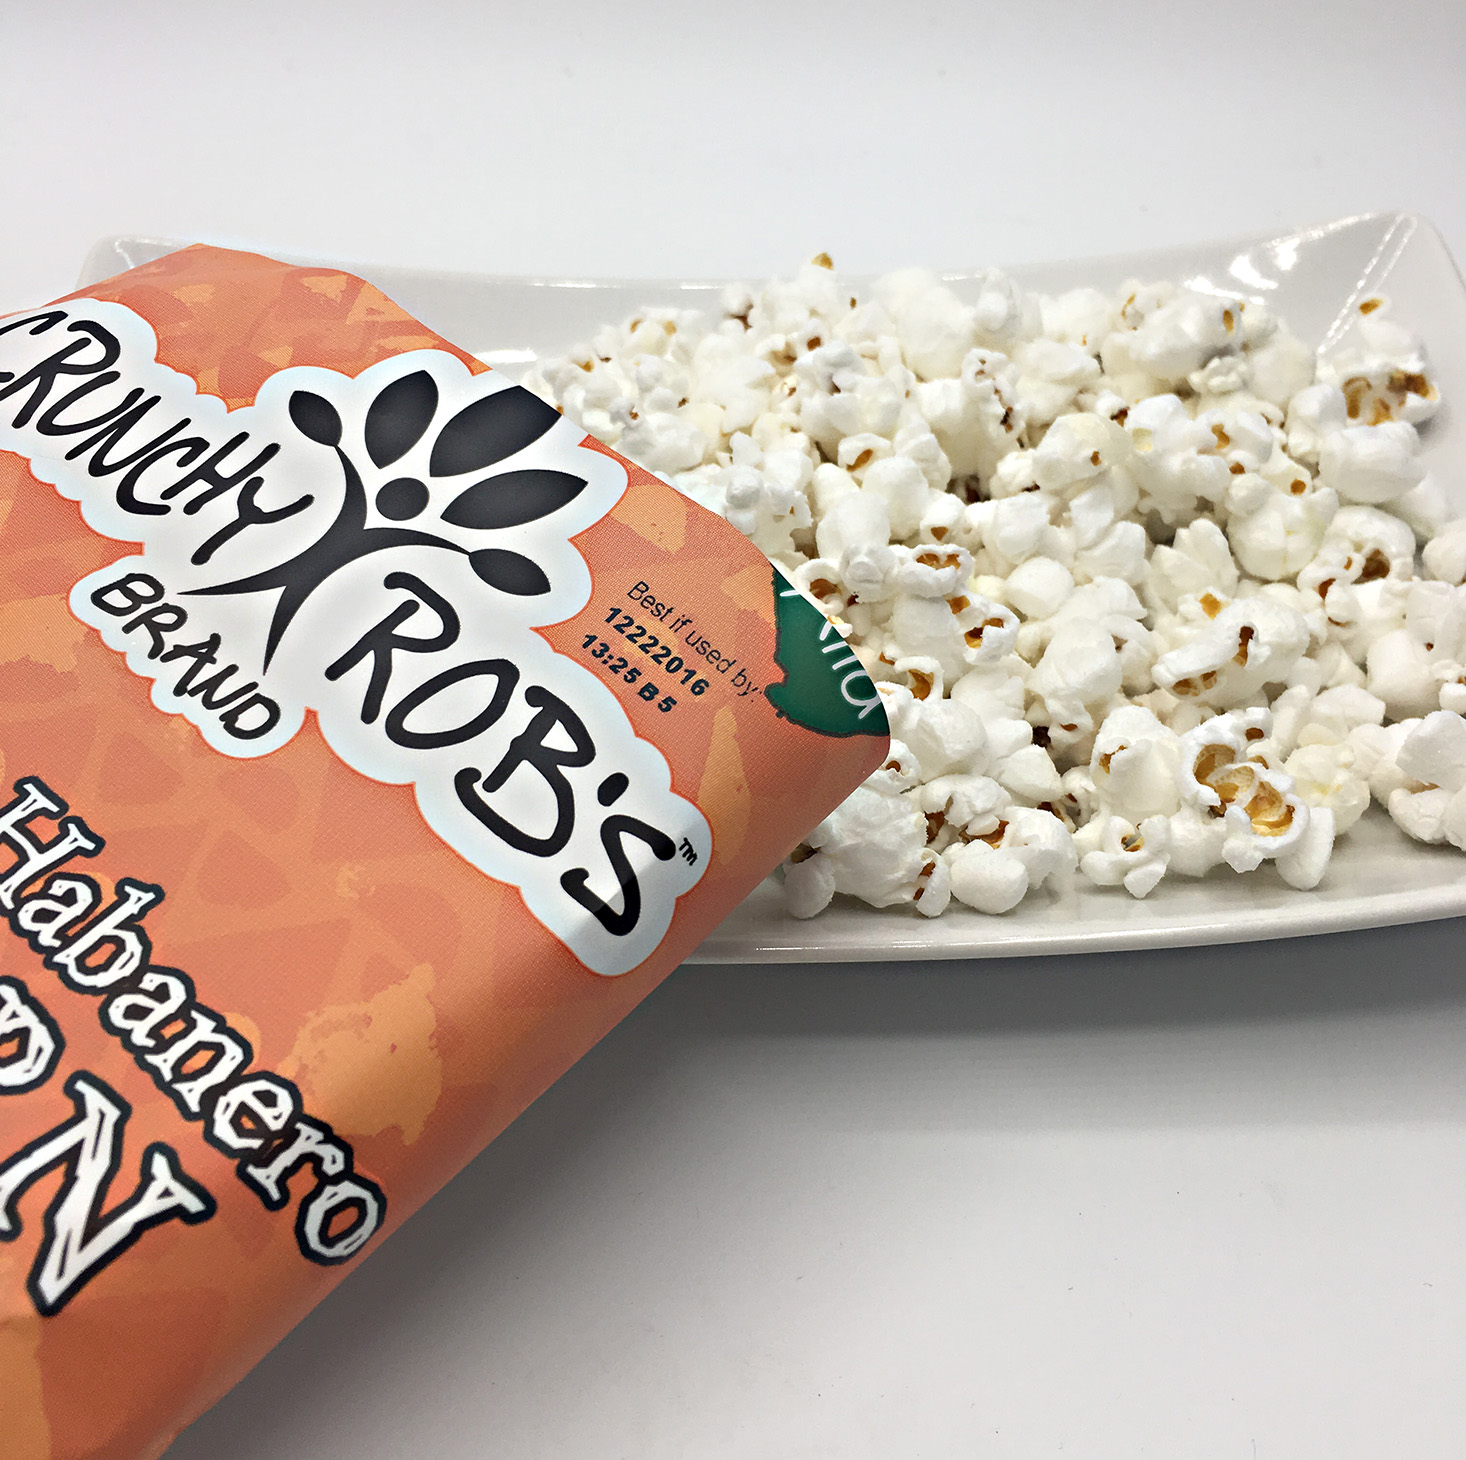 snack-sack-september-2016-popcorn